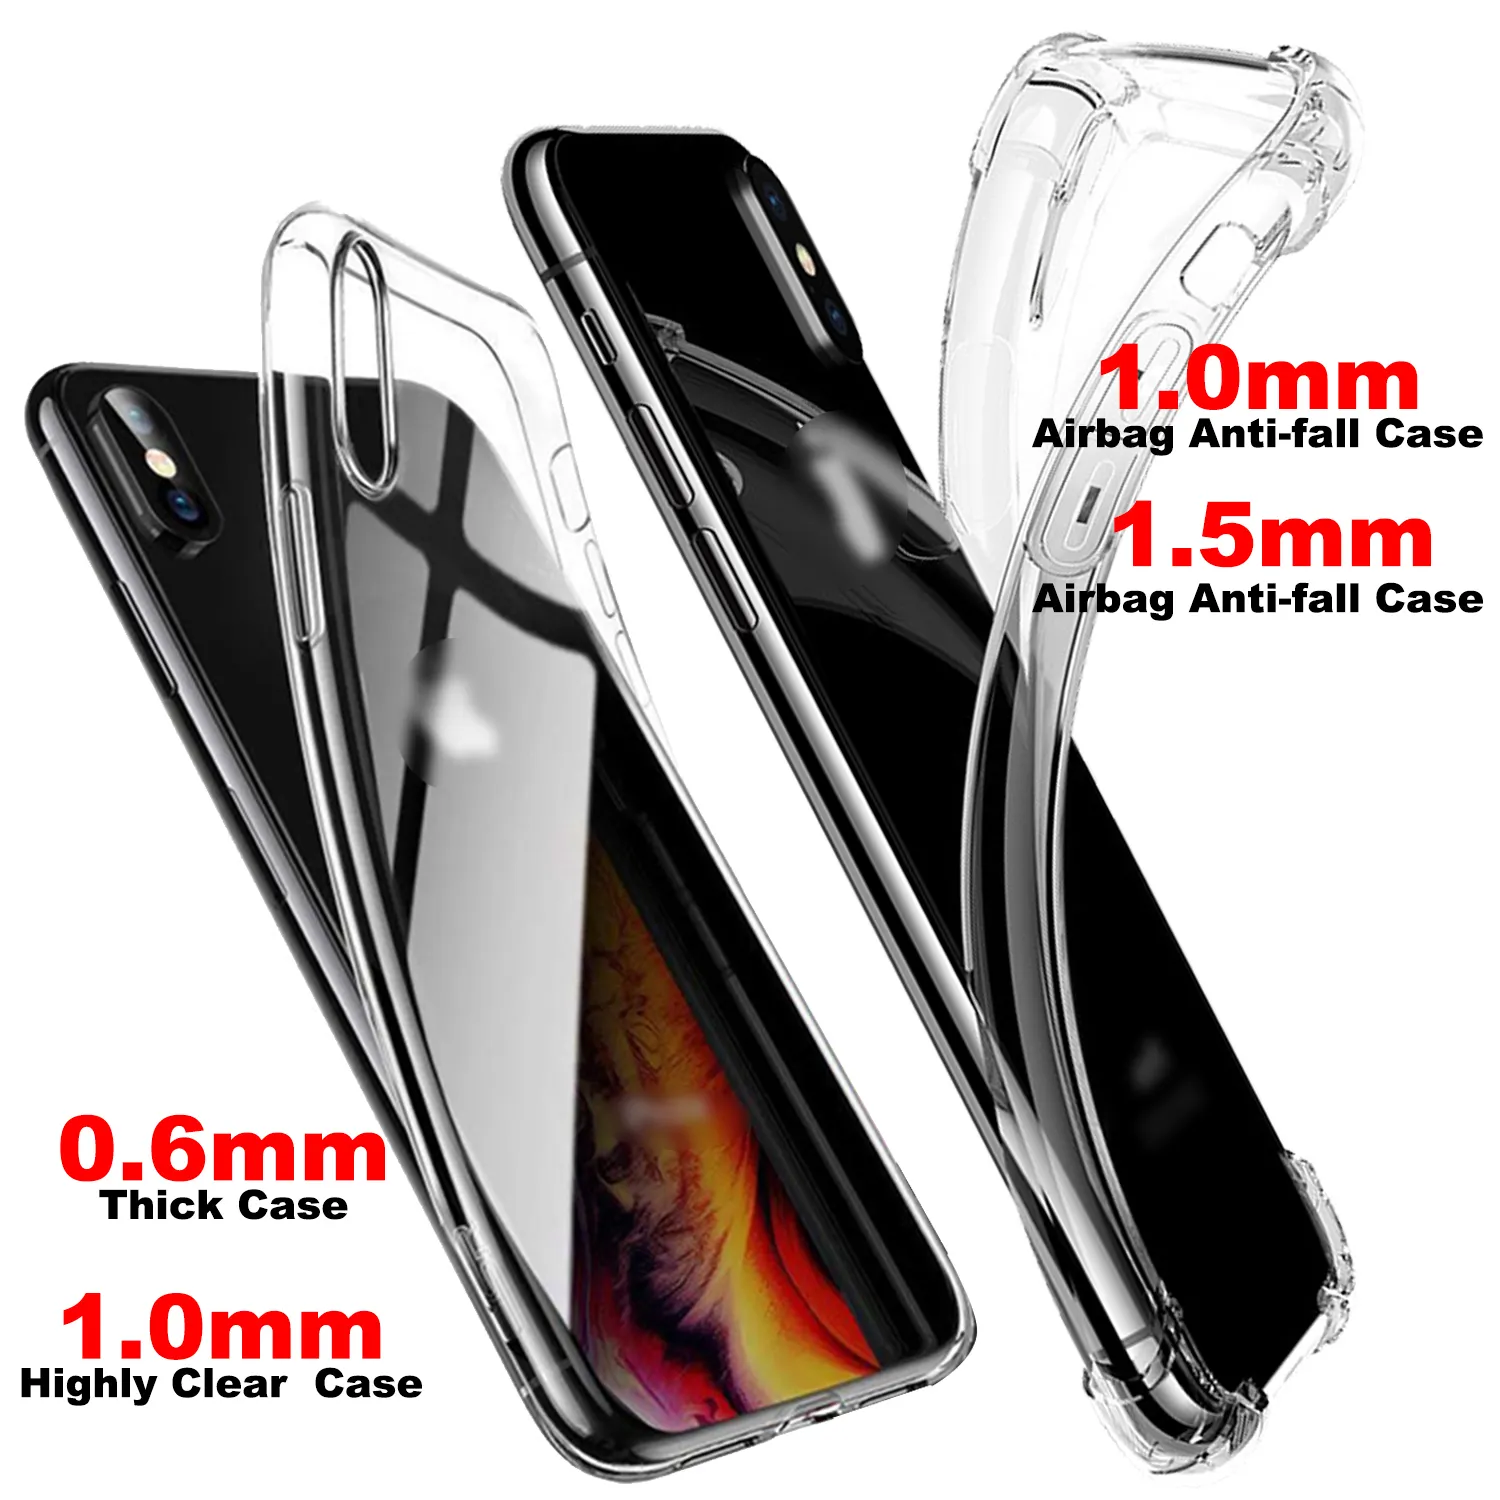 ShanHai мягкий прозрачный чехол для телефона чехол для iPhone 7 XR чехол силиконовый мягкий чехол для iPhone 1211 Pro XS Max X, 8, 7, 6 s, Plus, 5, 5s нового iPhone SE 9 чехол